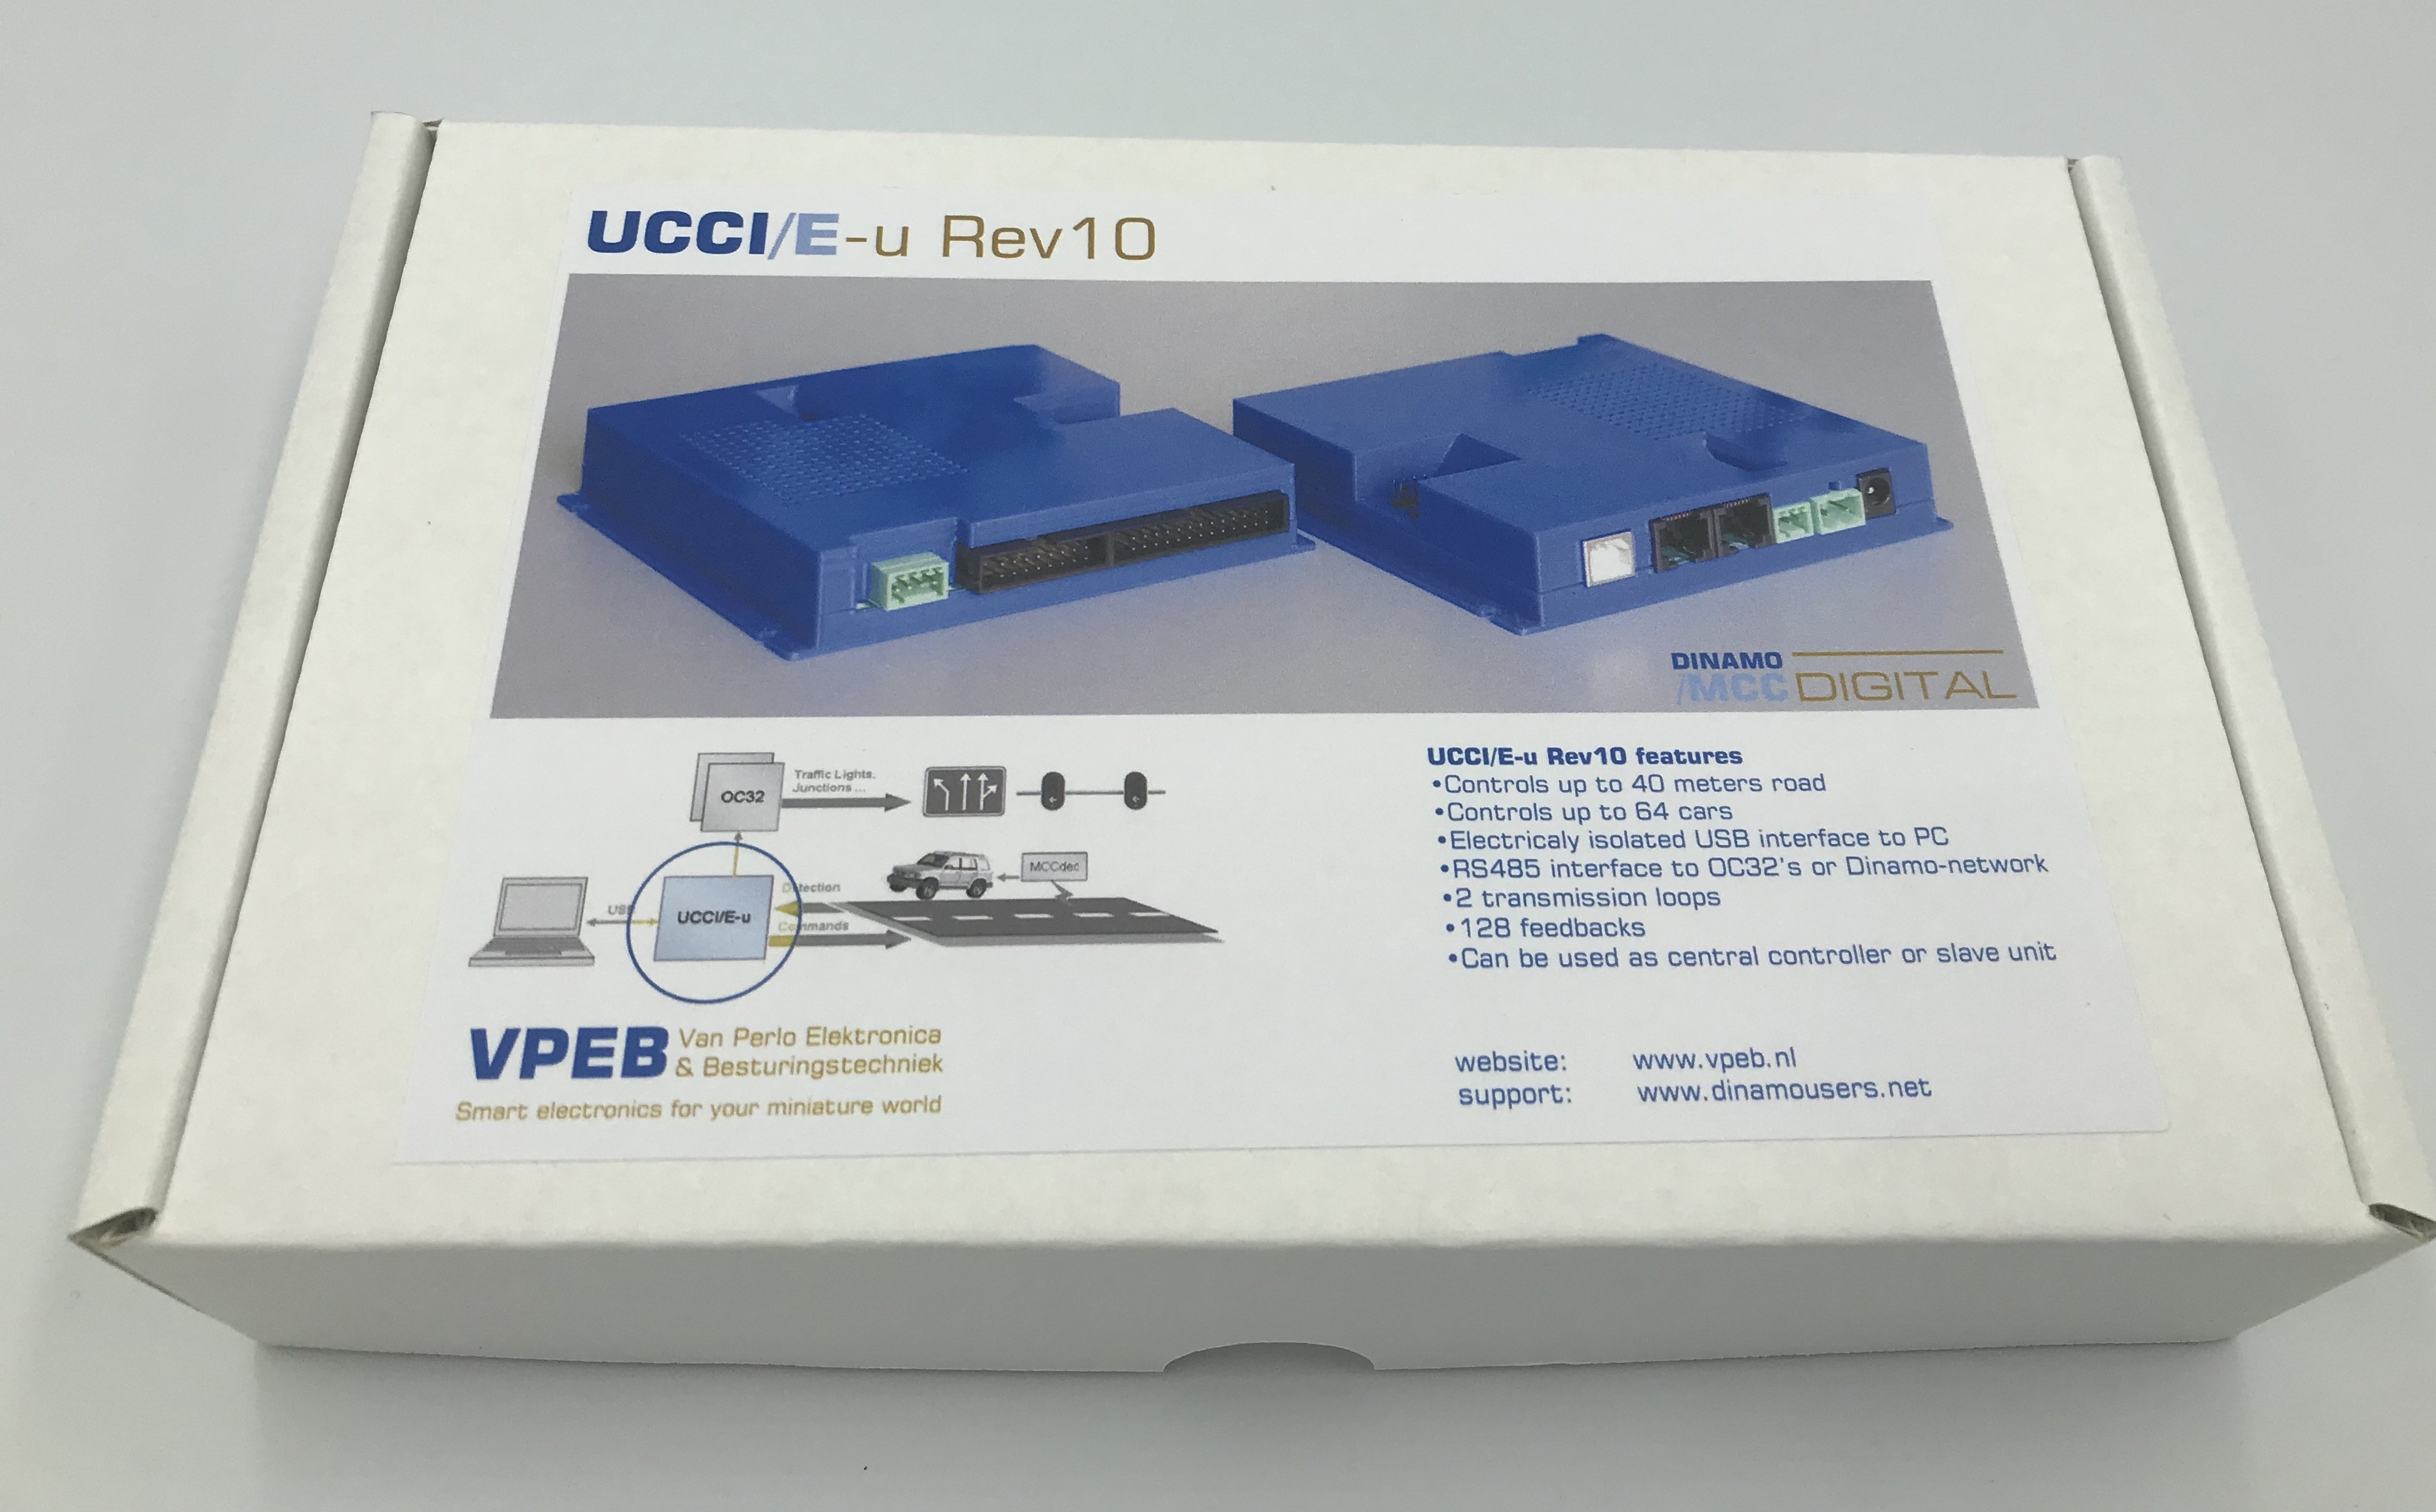 VPEB UCCI/E-u Rev 10 MCC Digital Control Centre.